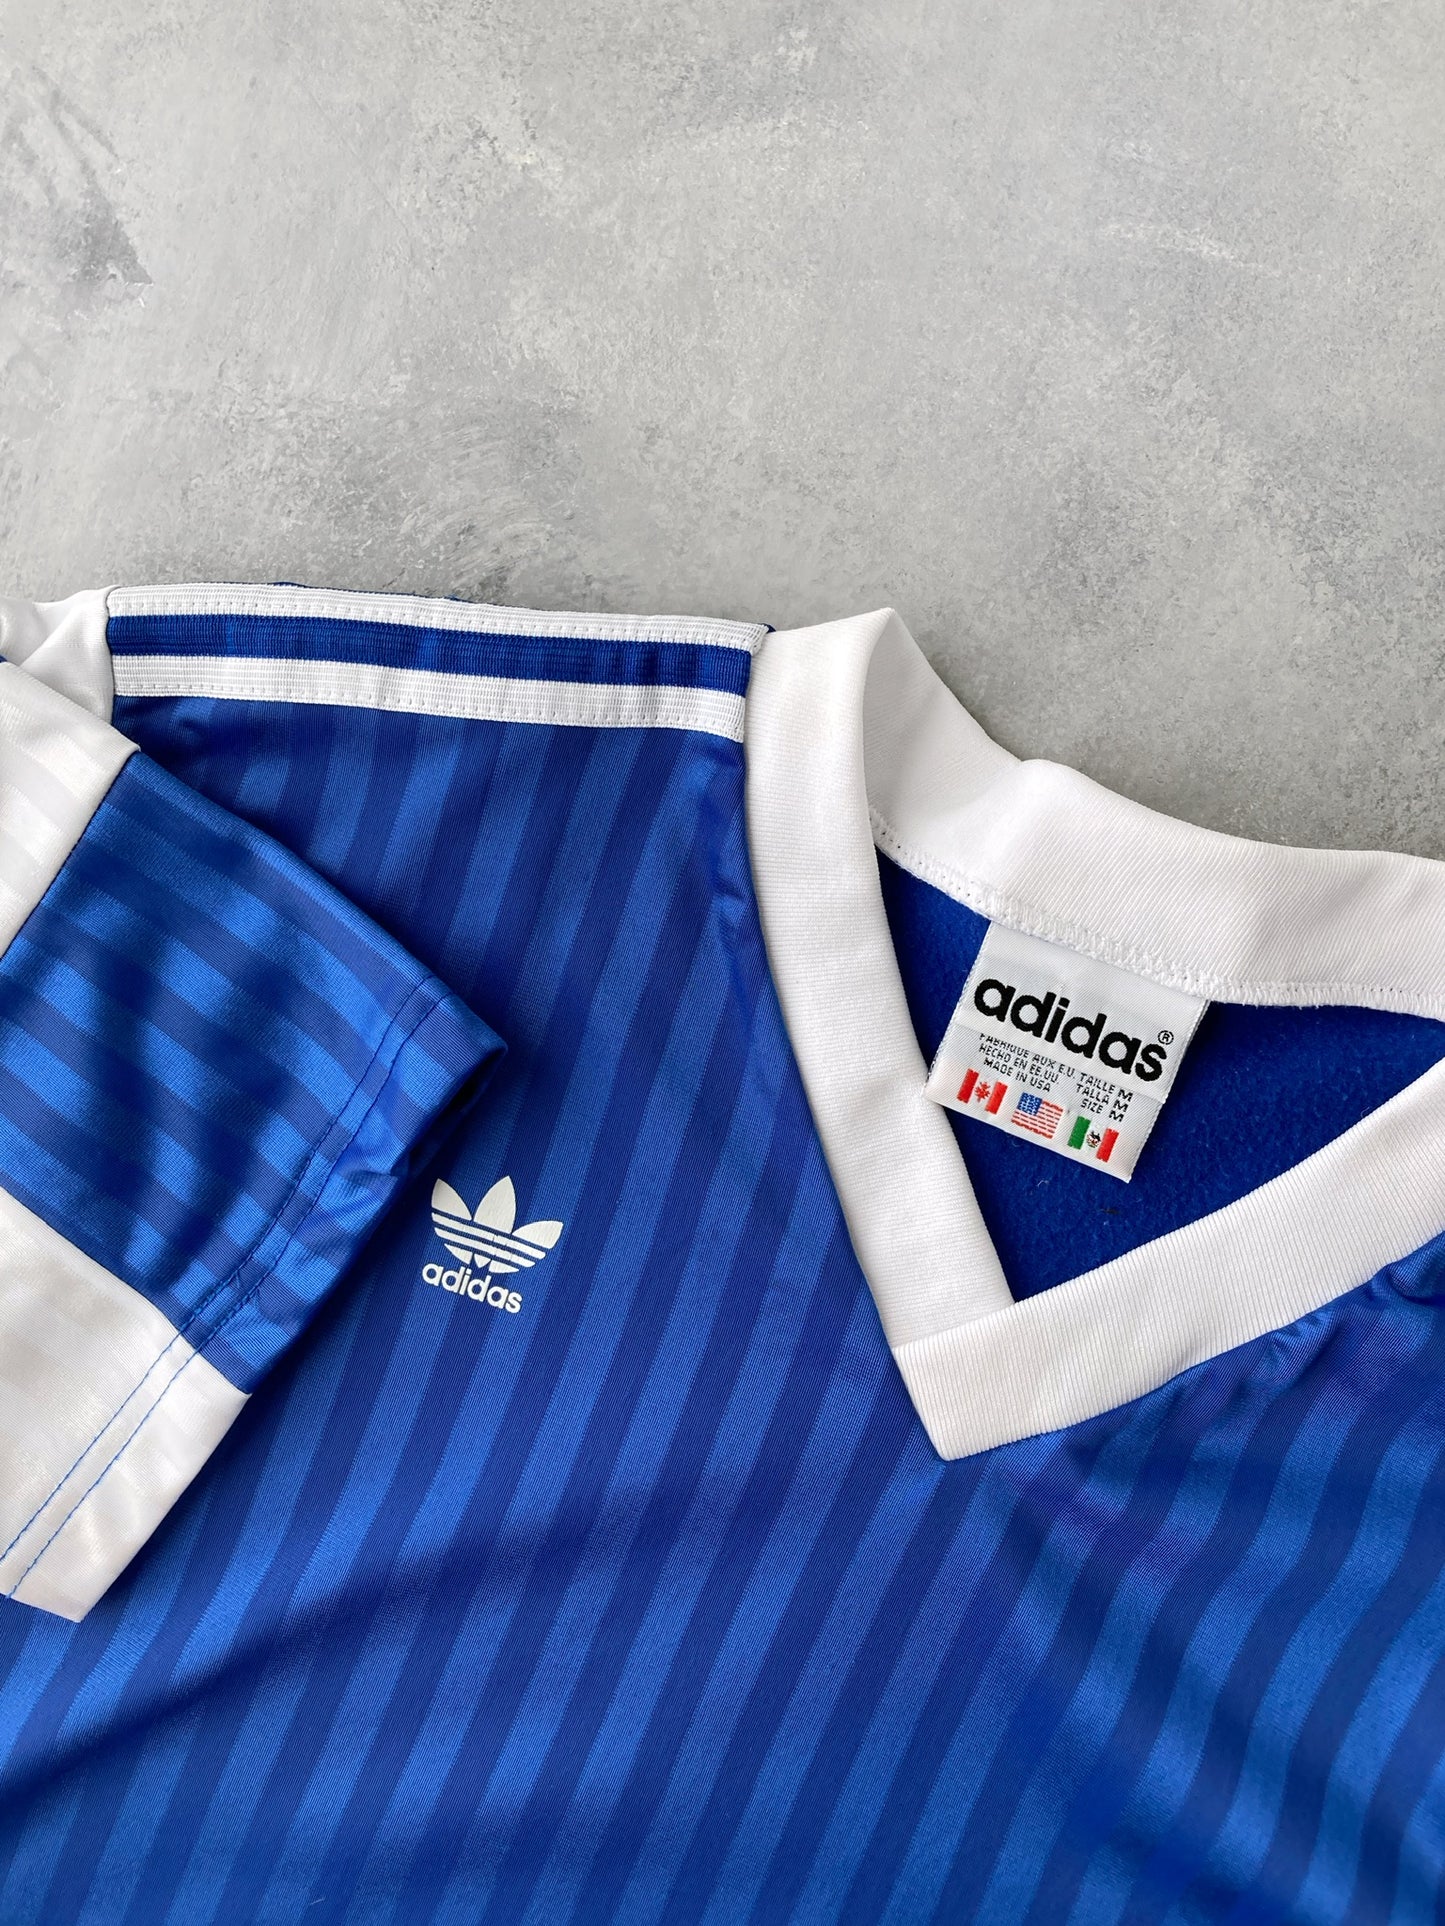 Adidas Soccer Jersey 90's - Small / Medium